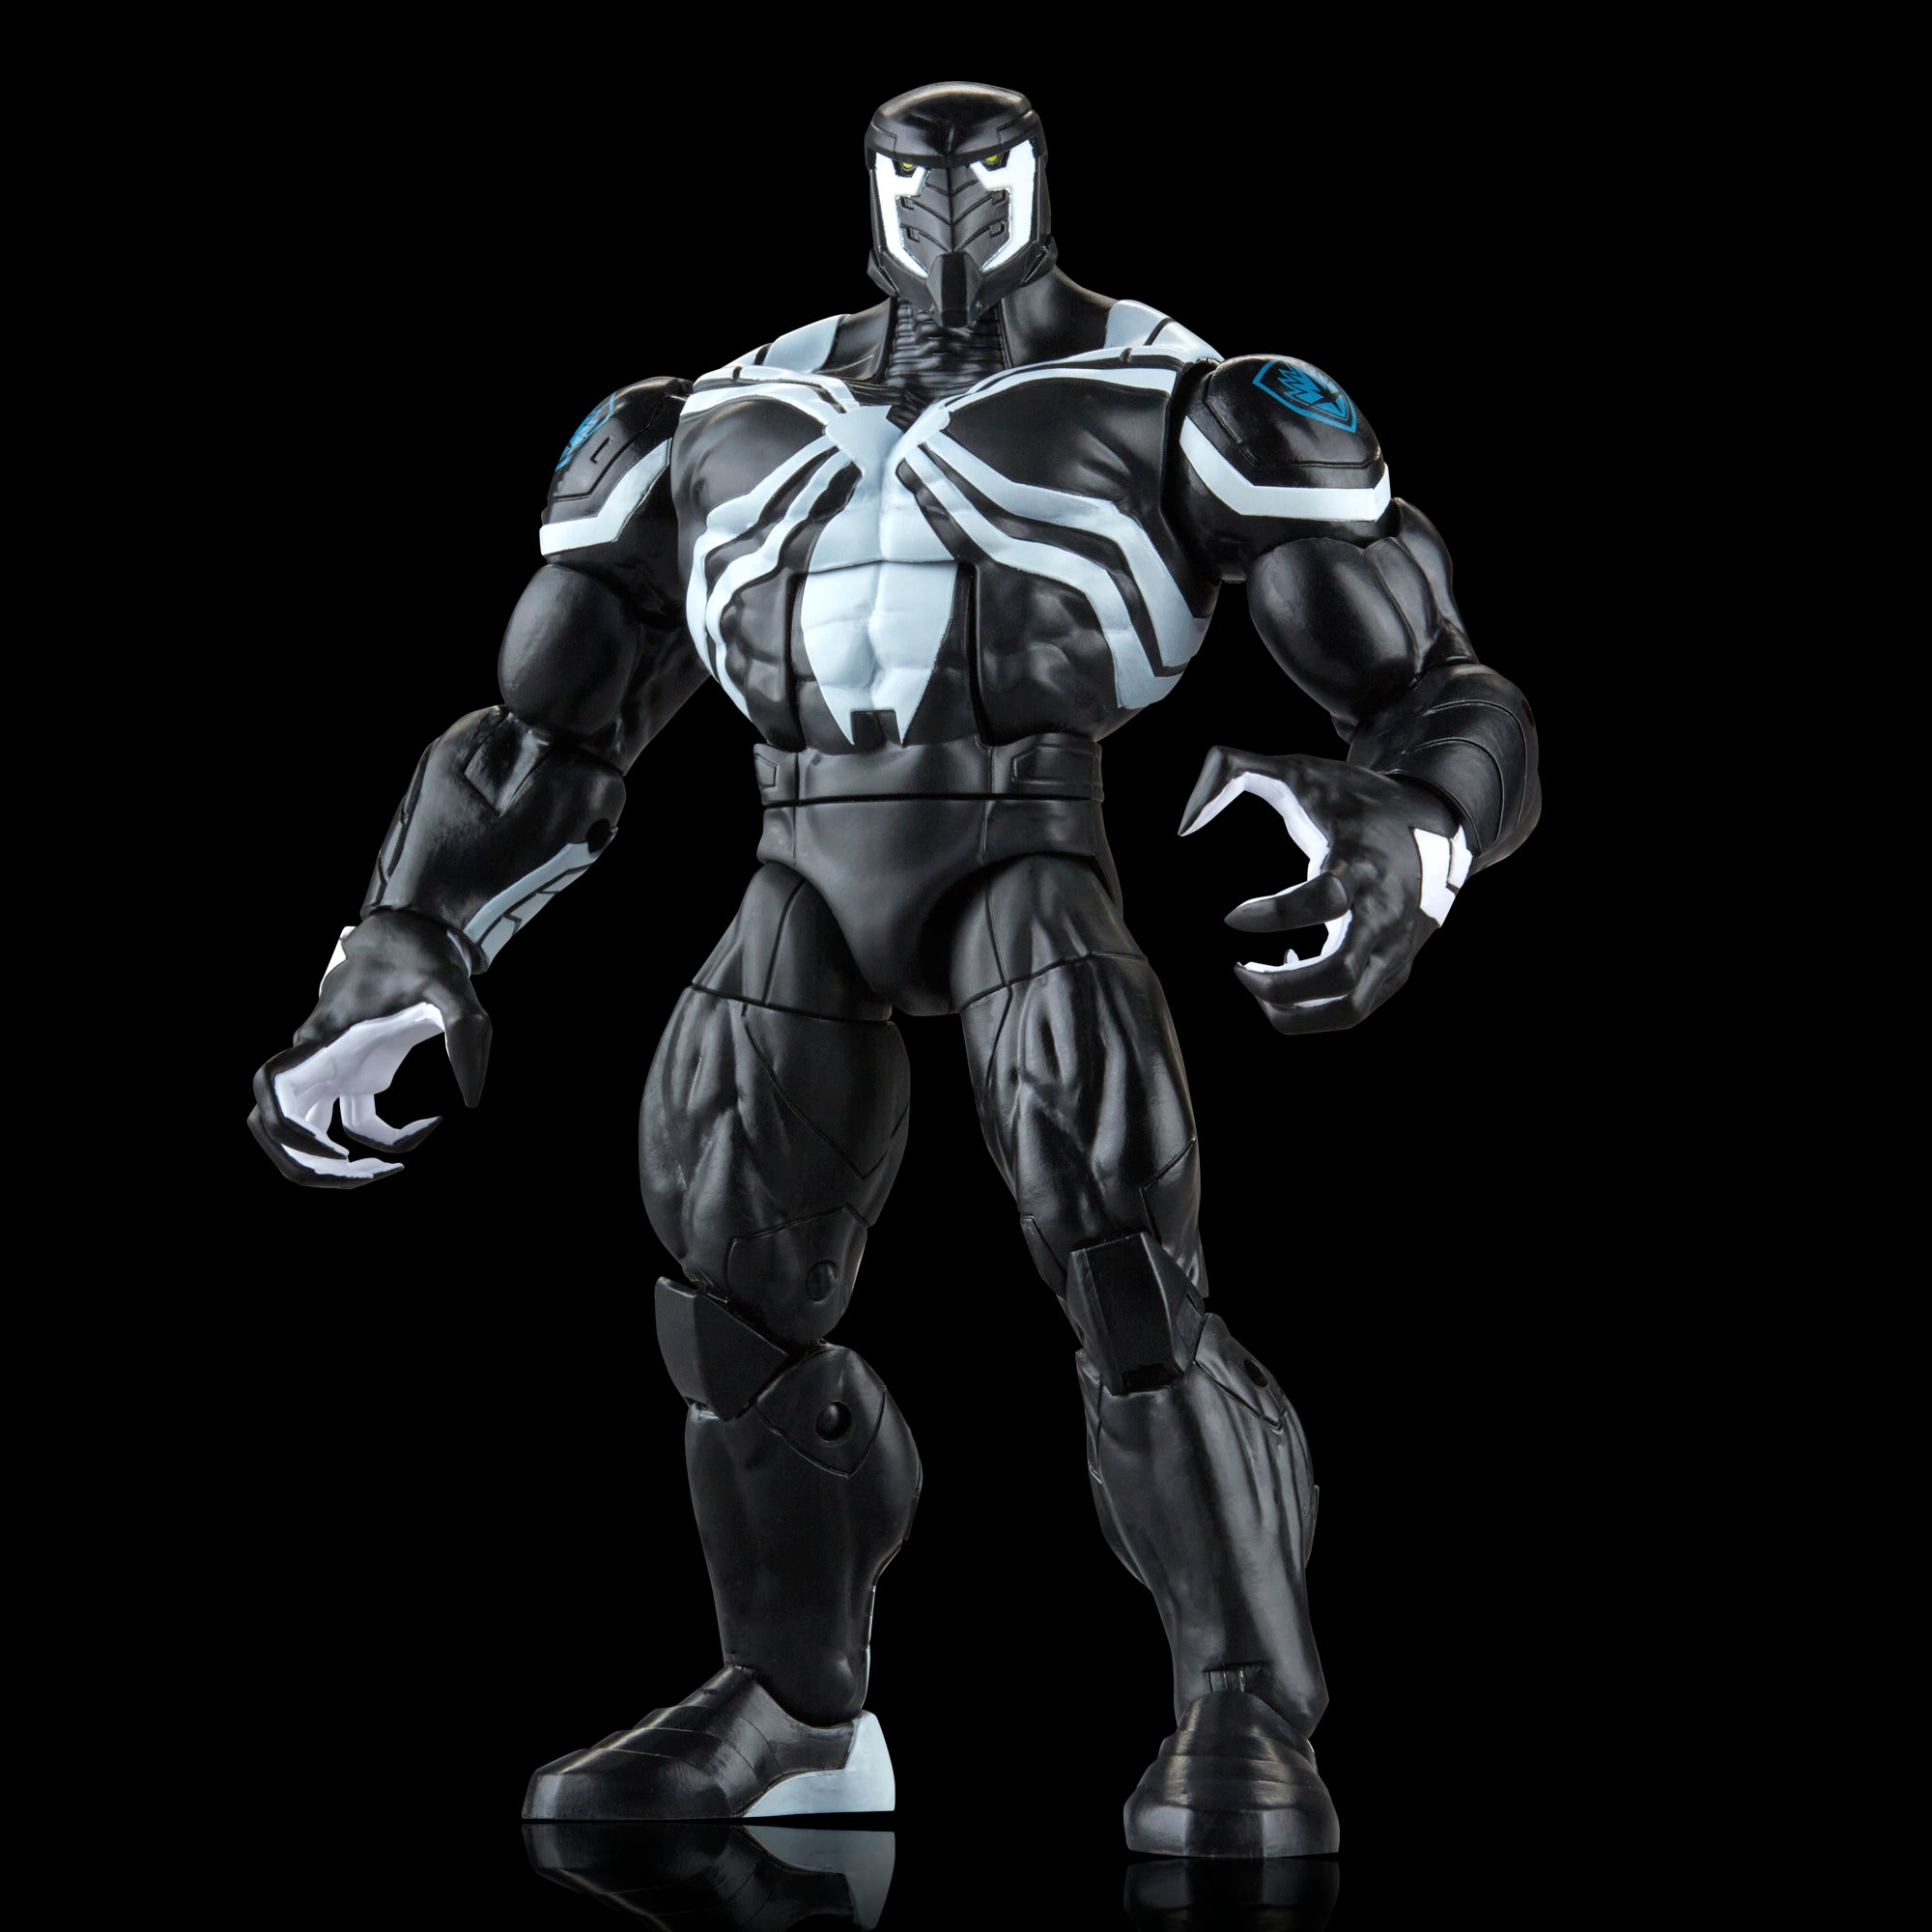 Figura articulada Venom Marvel Legends 15cm — nauticamilanonline